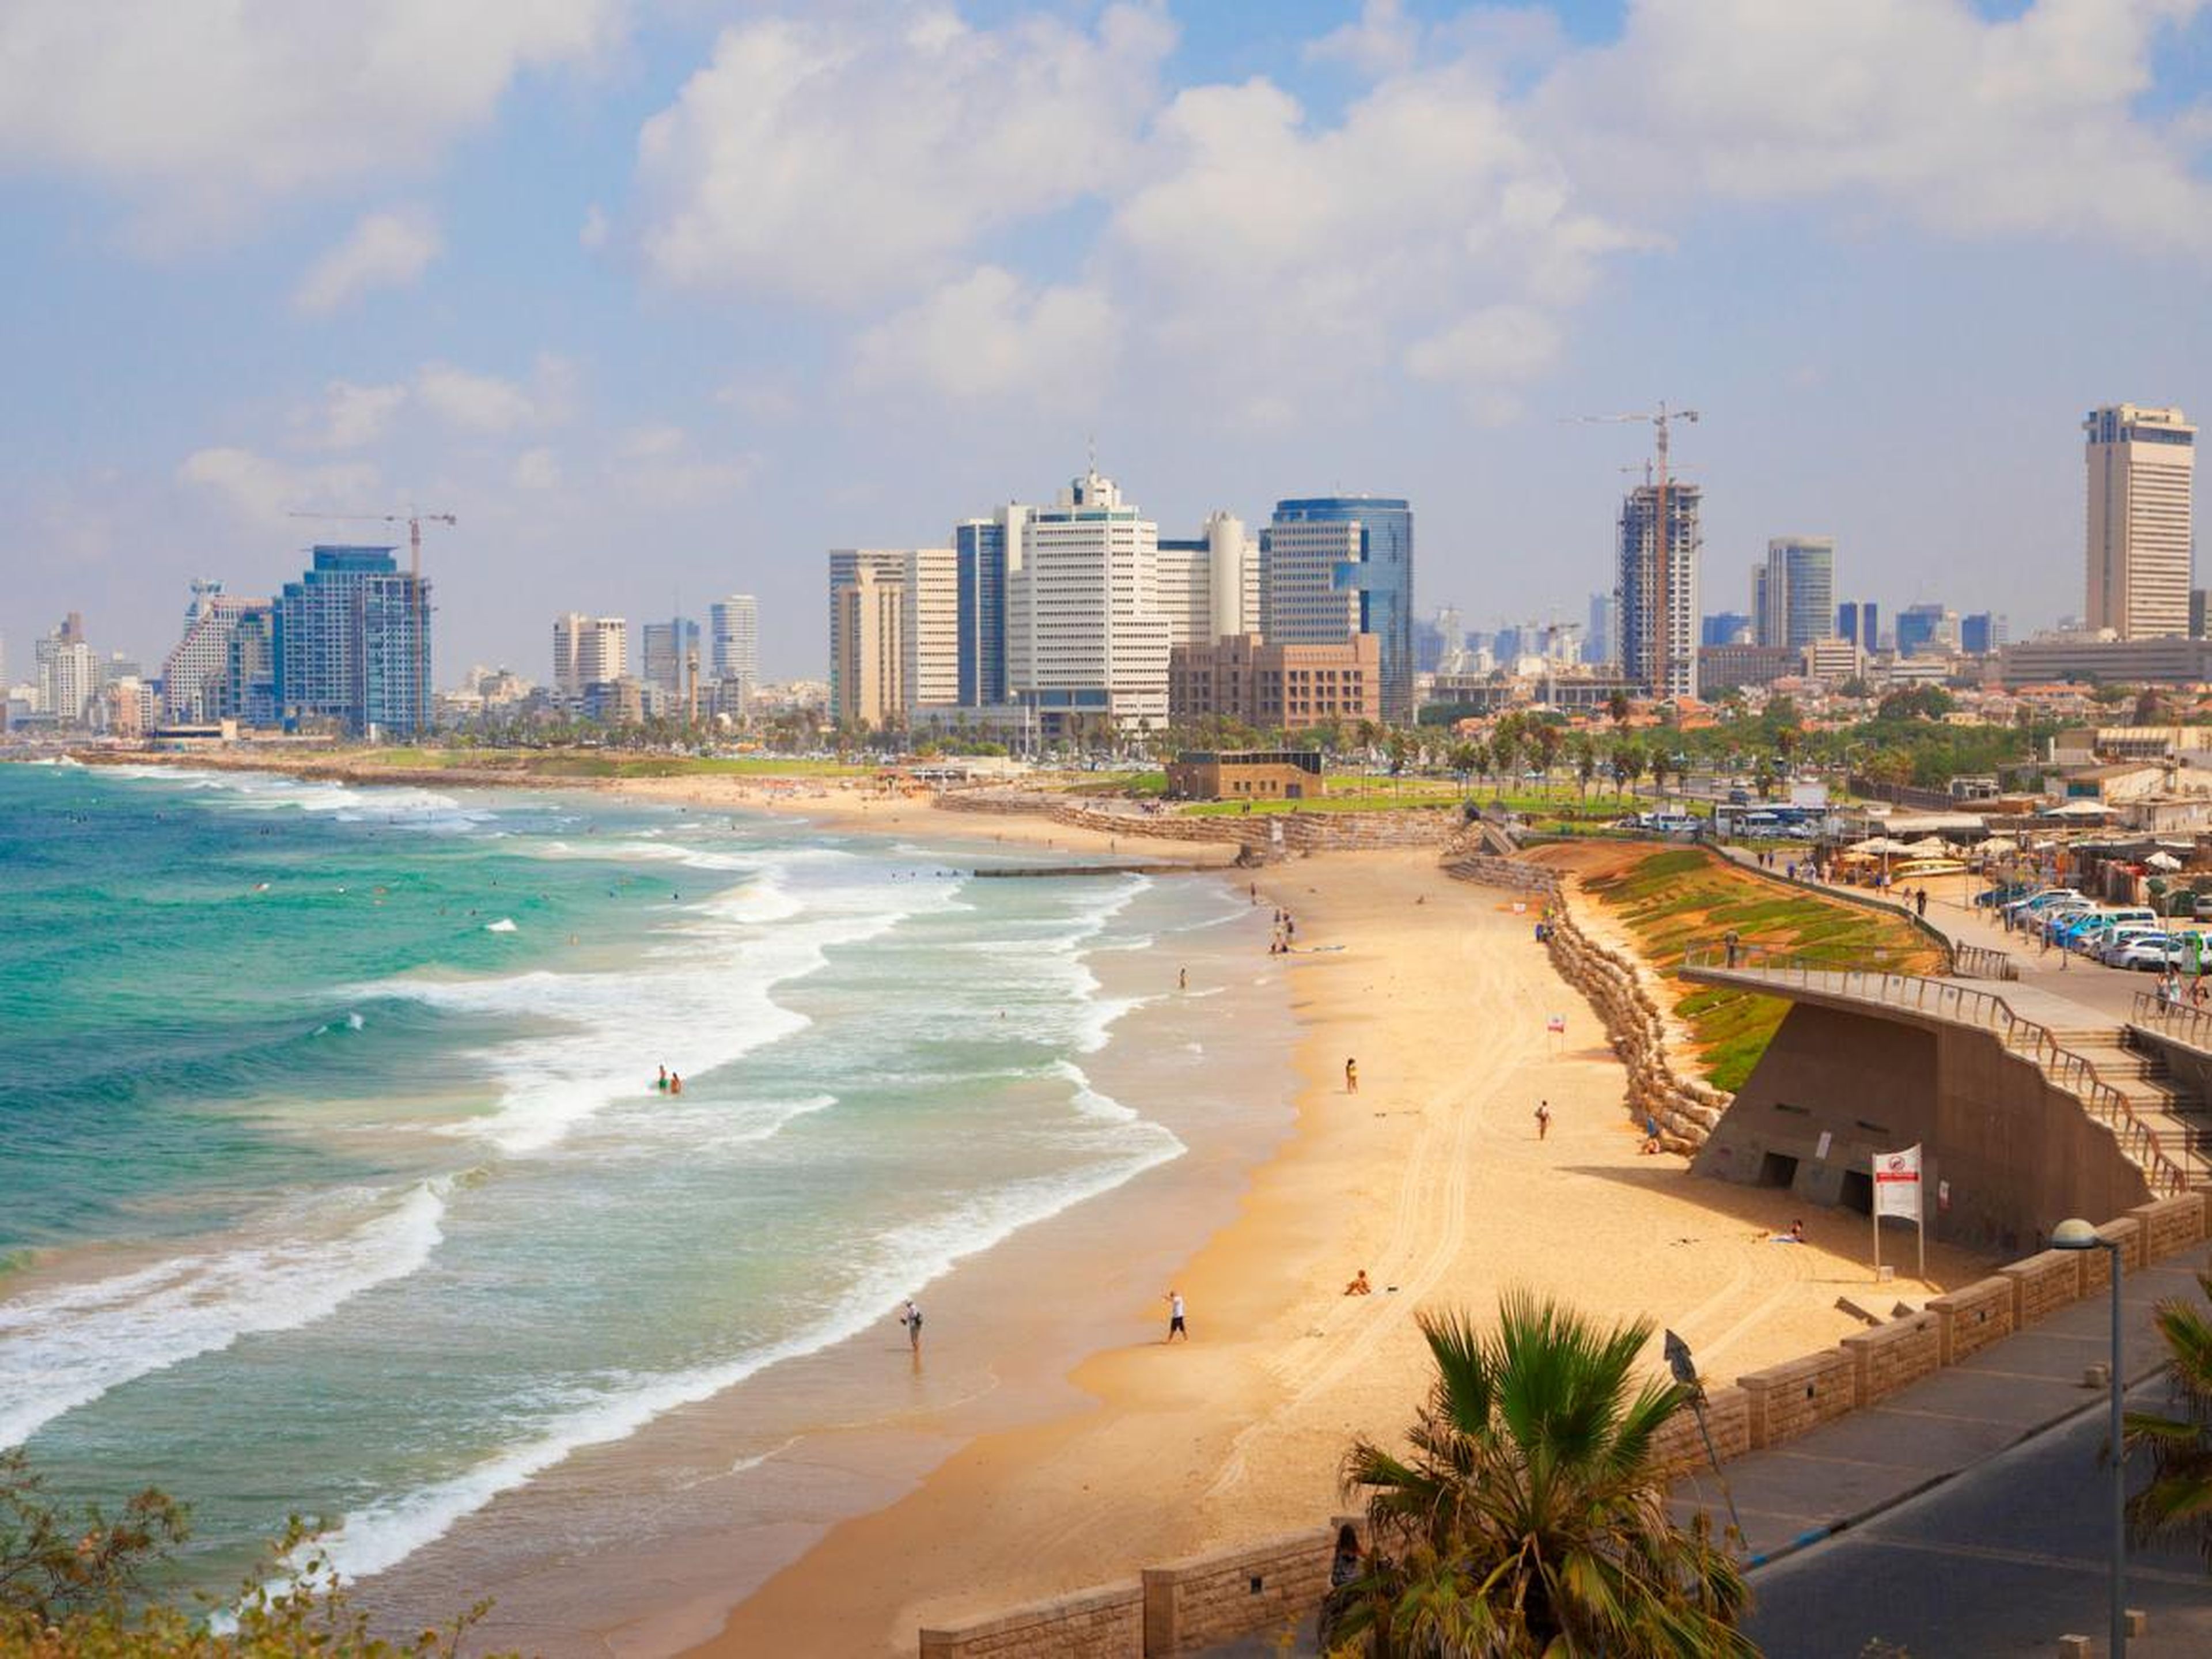 Ha habido una nueva demanda de propiedades de lujo en Israel, particularmente en Tel Aviv.